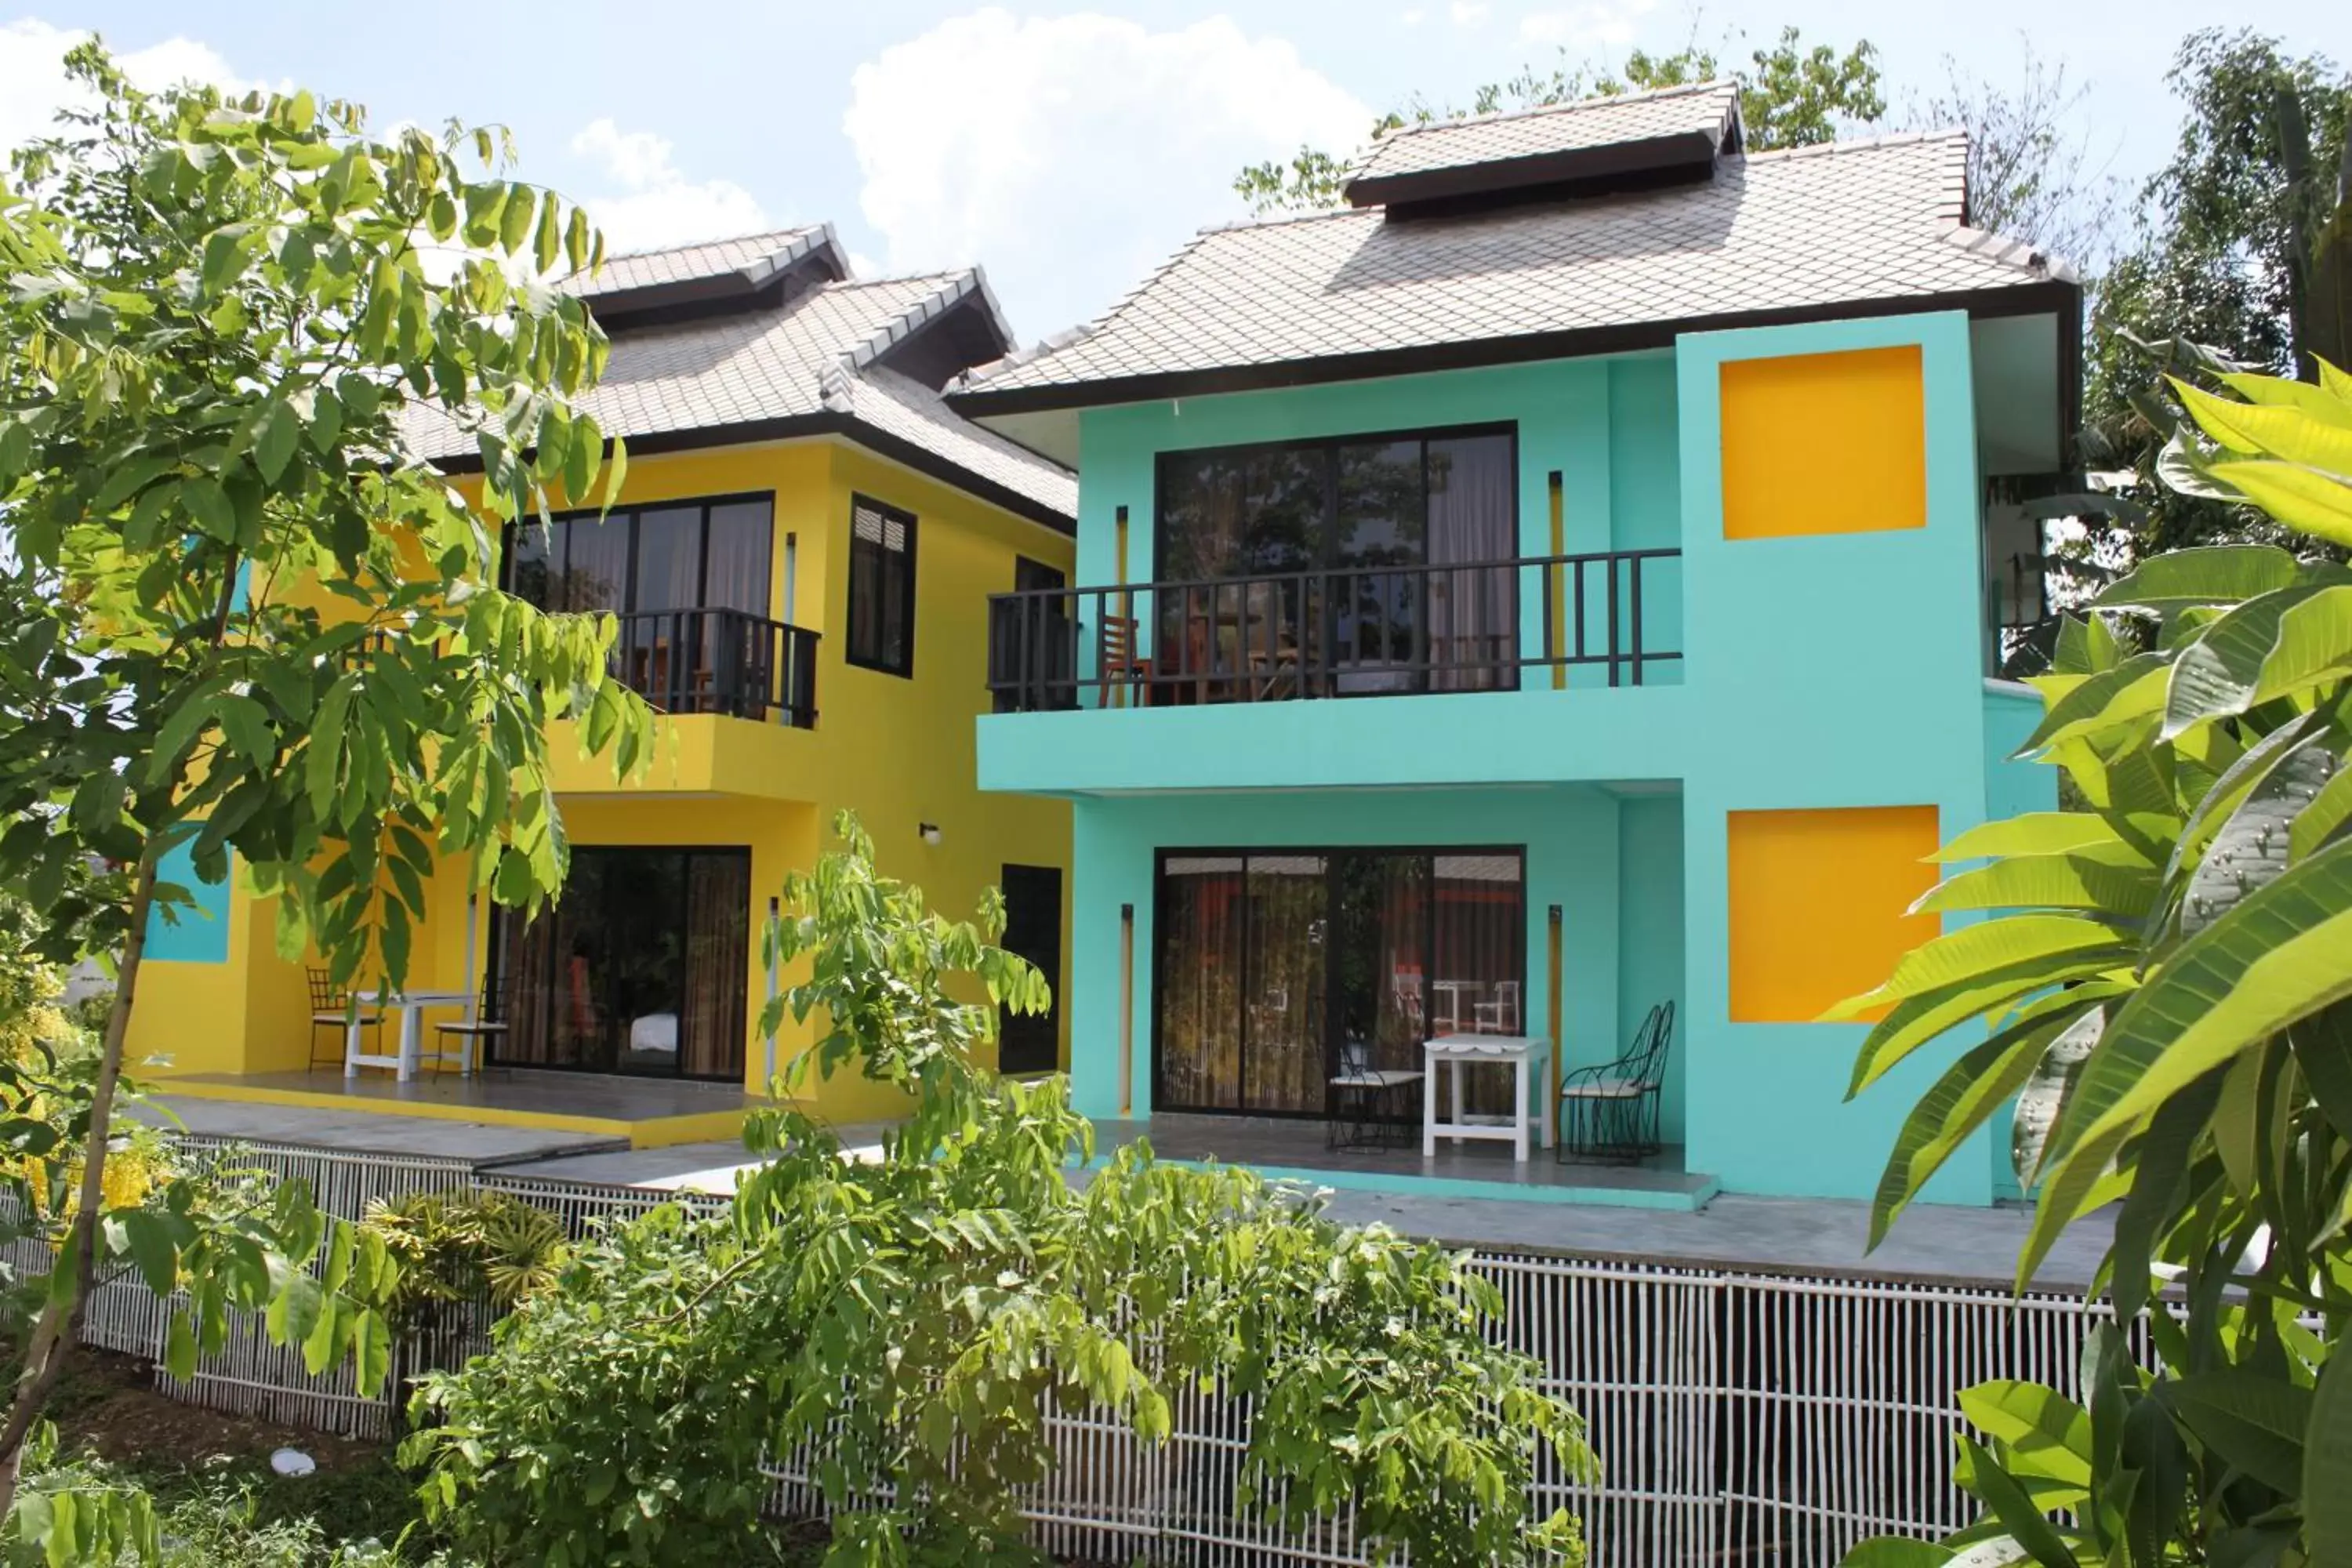 Property building, Facade/Entrance in Bura Lumpai Resort